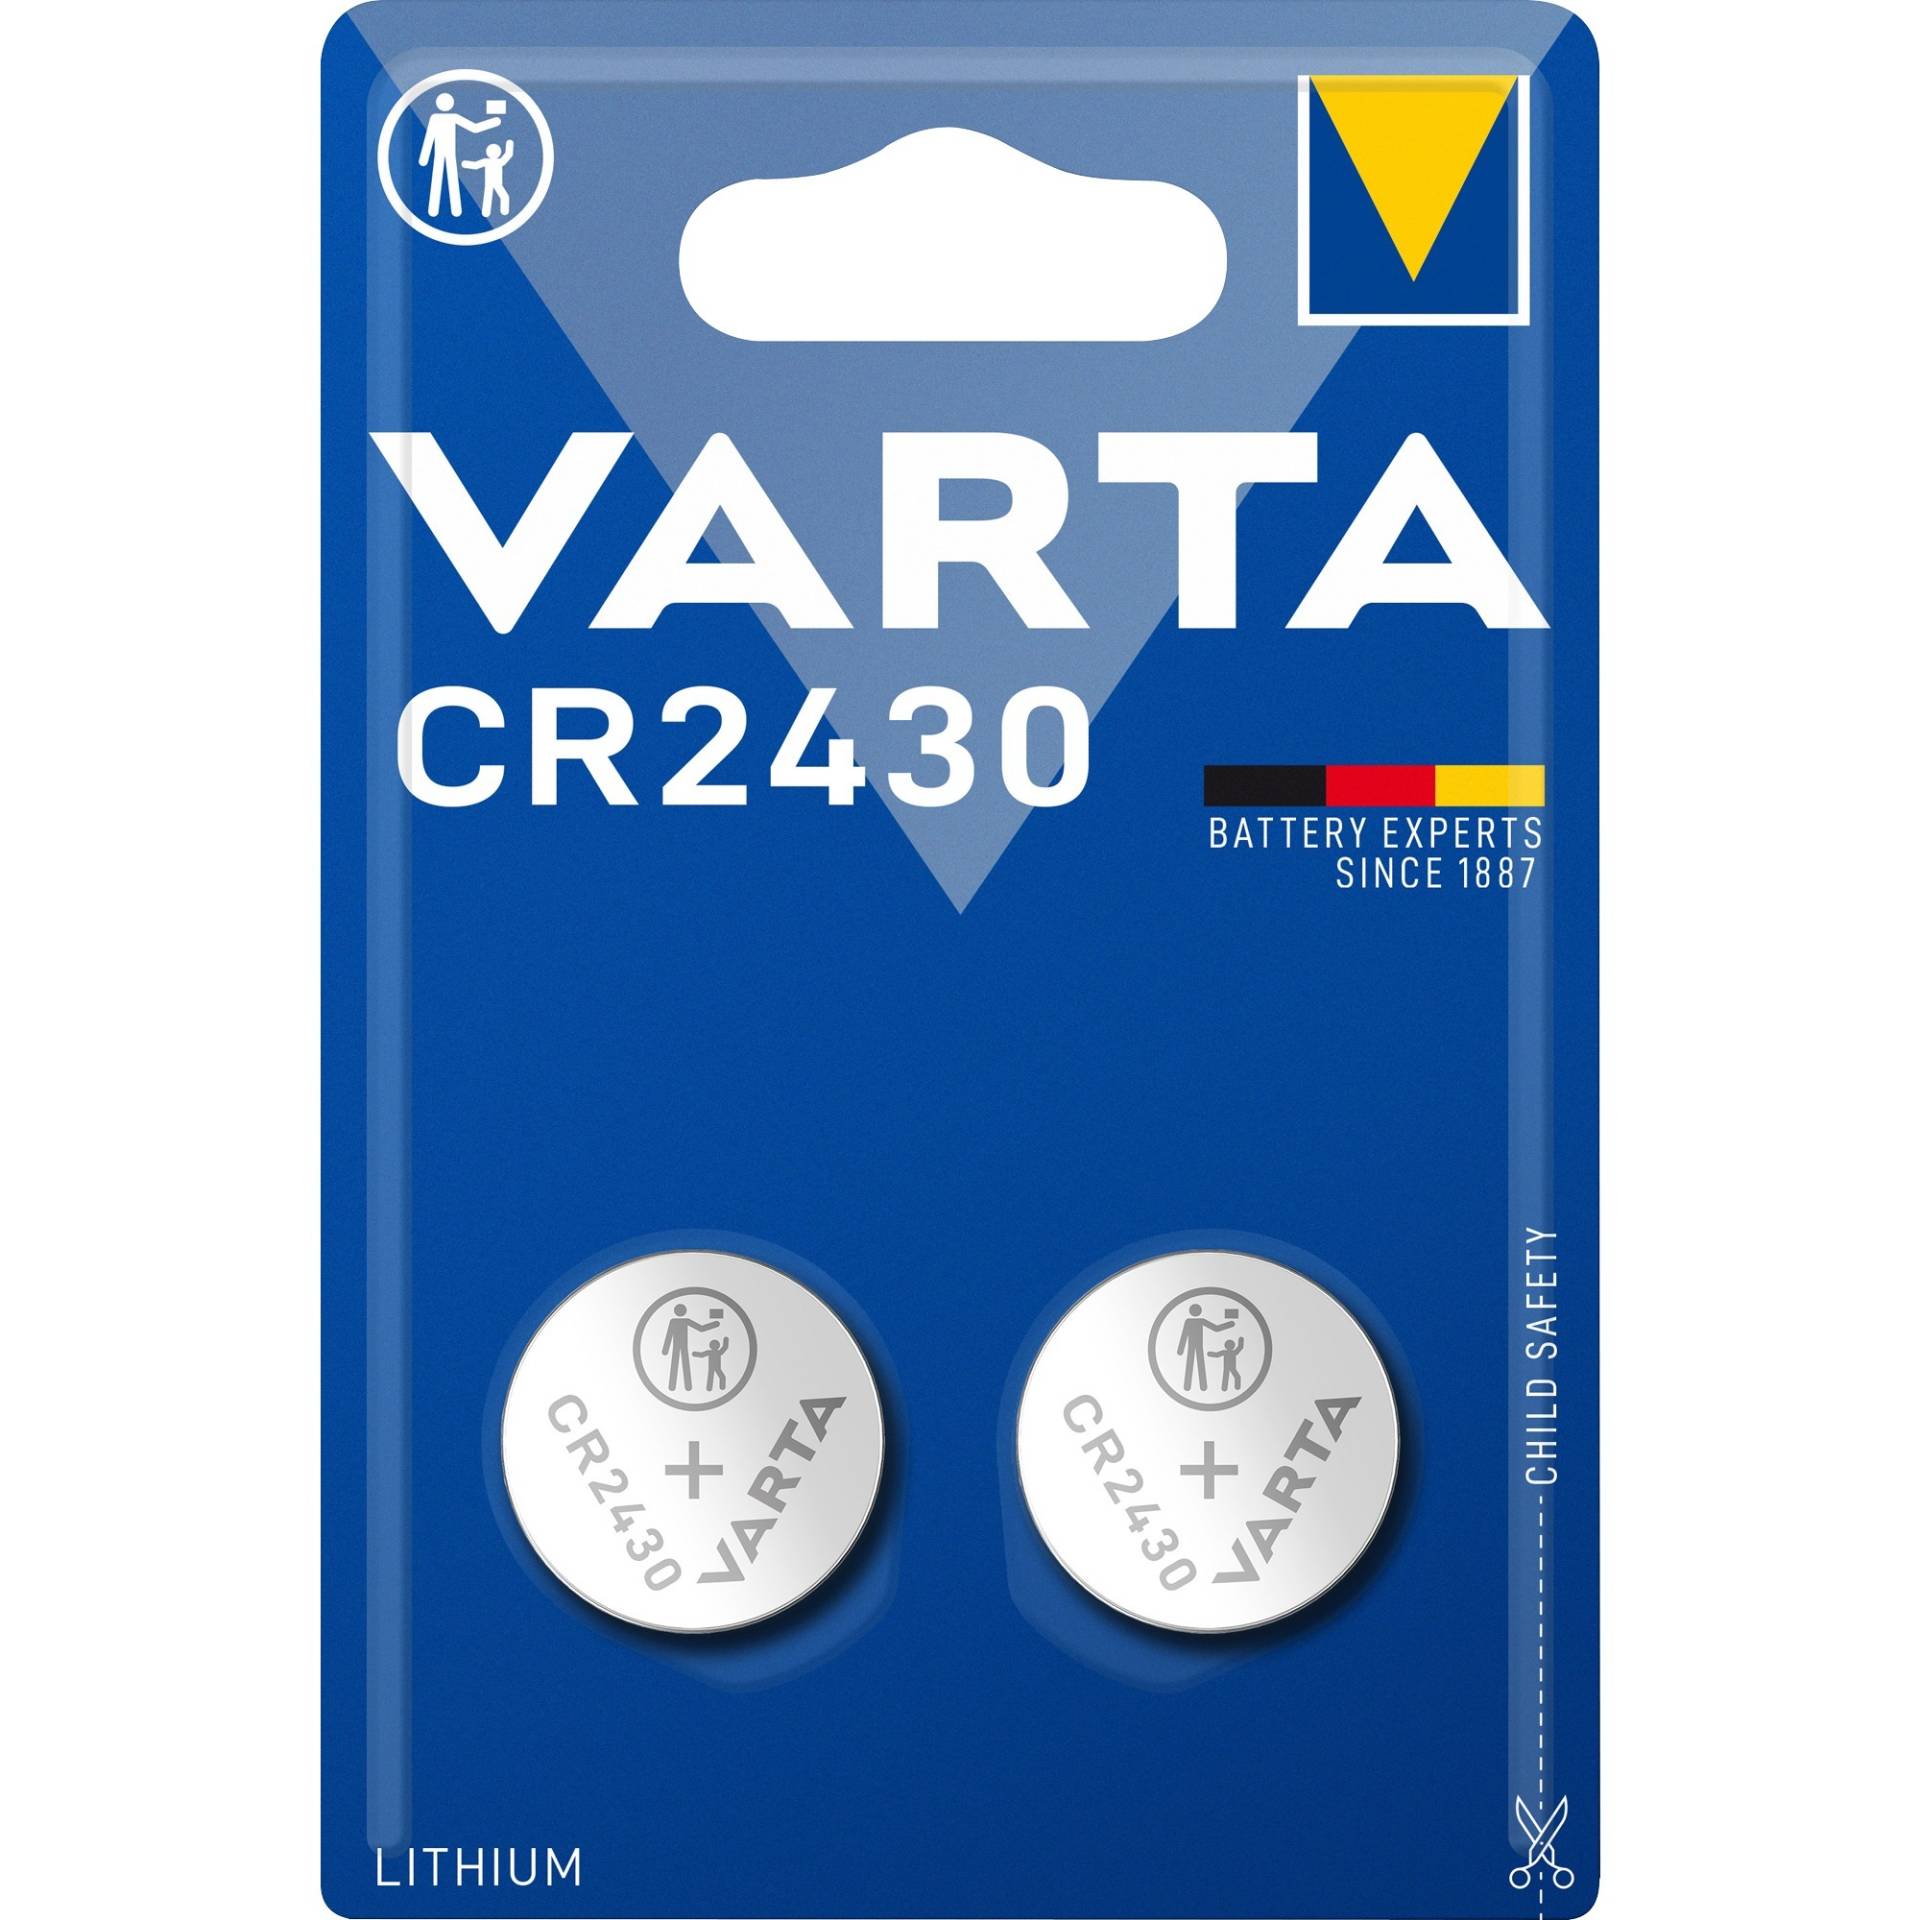 LITHIUM Coin CR2430, Batterie von Varta